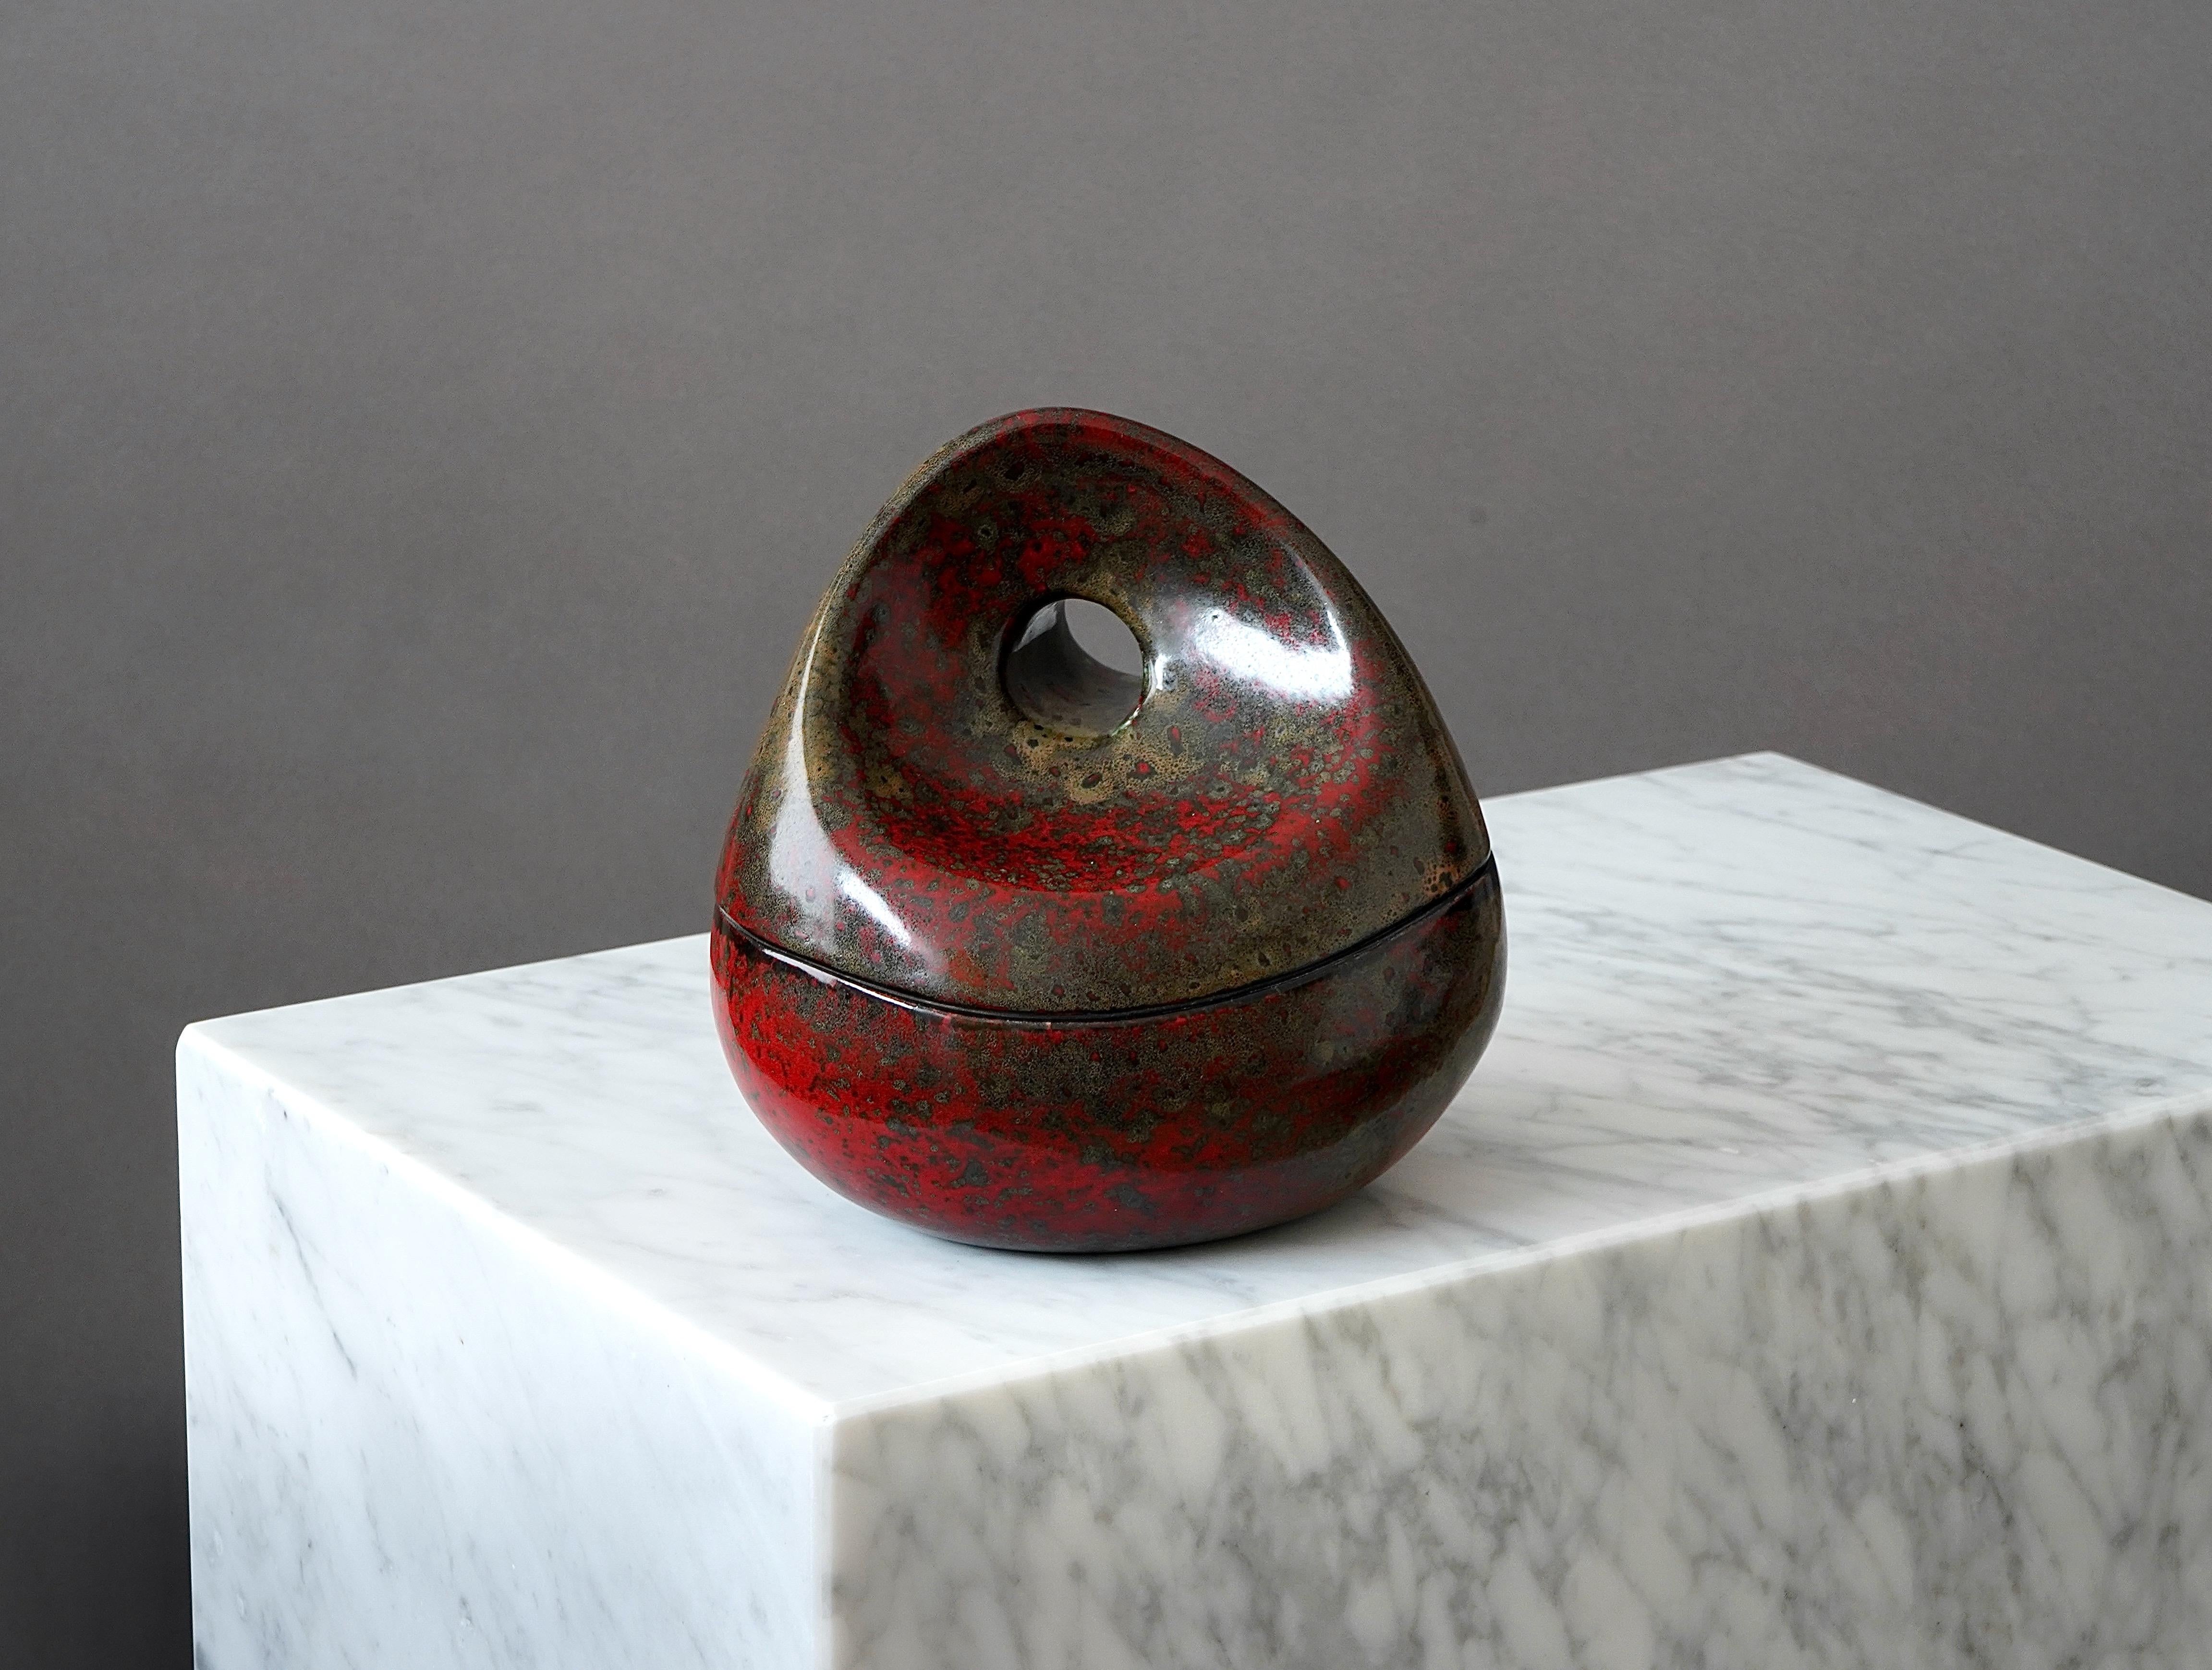 Eine schöne Steinzeugschüssel mit Deckel und toller Glasur.
Hergestellt von Birger Åström (1931-2020) in seinem Studio in Örnsköldsvik, Schweden, 1960er Jahre.

Ausgezeichneter Zustand. Signiert 'BÅM'.

Die Glasur ist ähnlich der von Hans Hedberg.